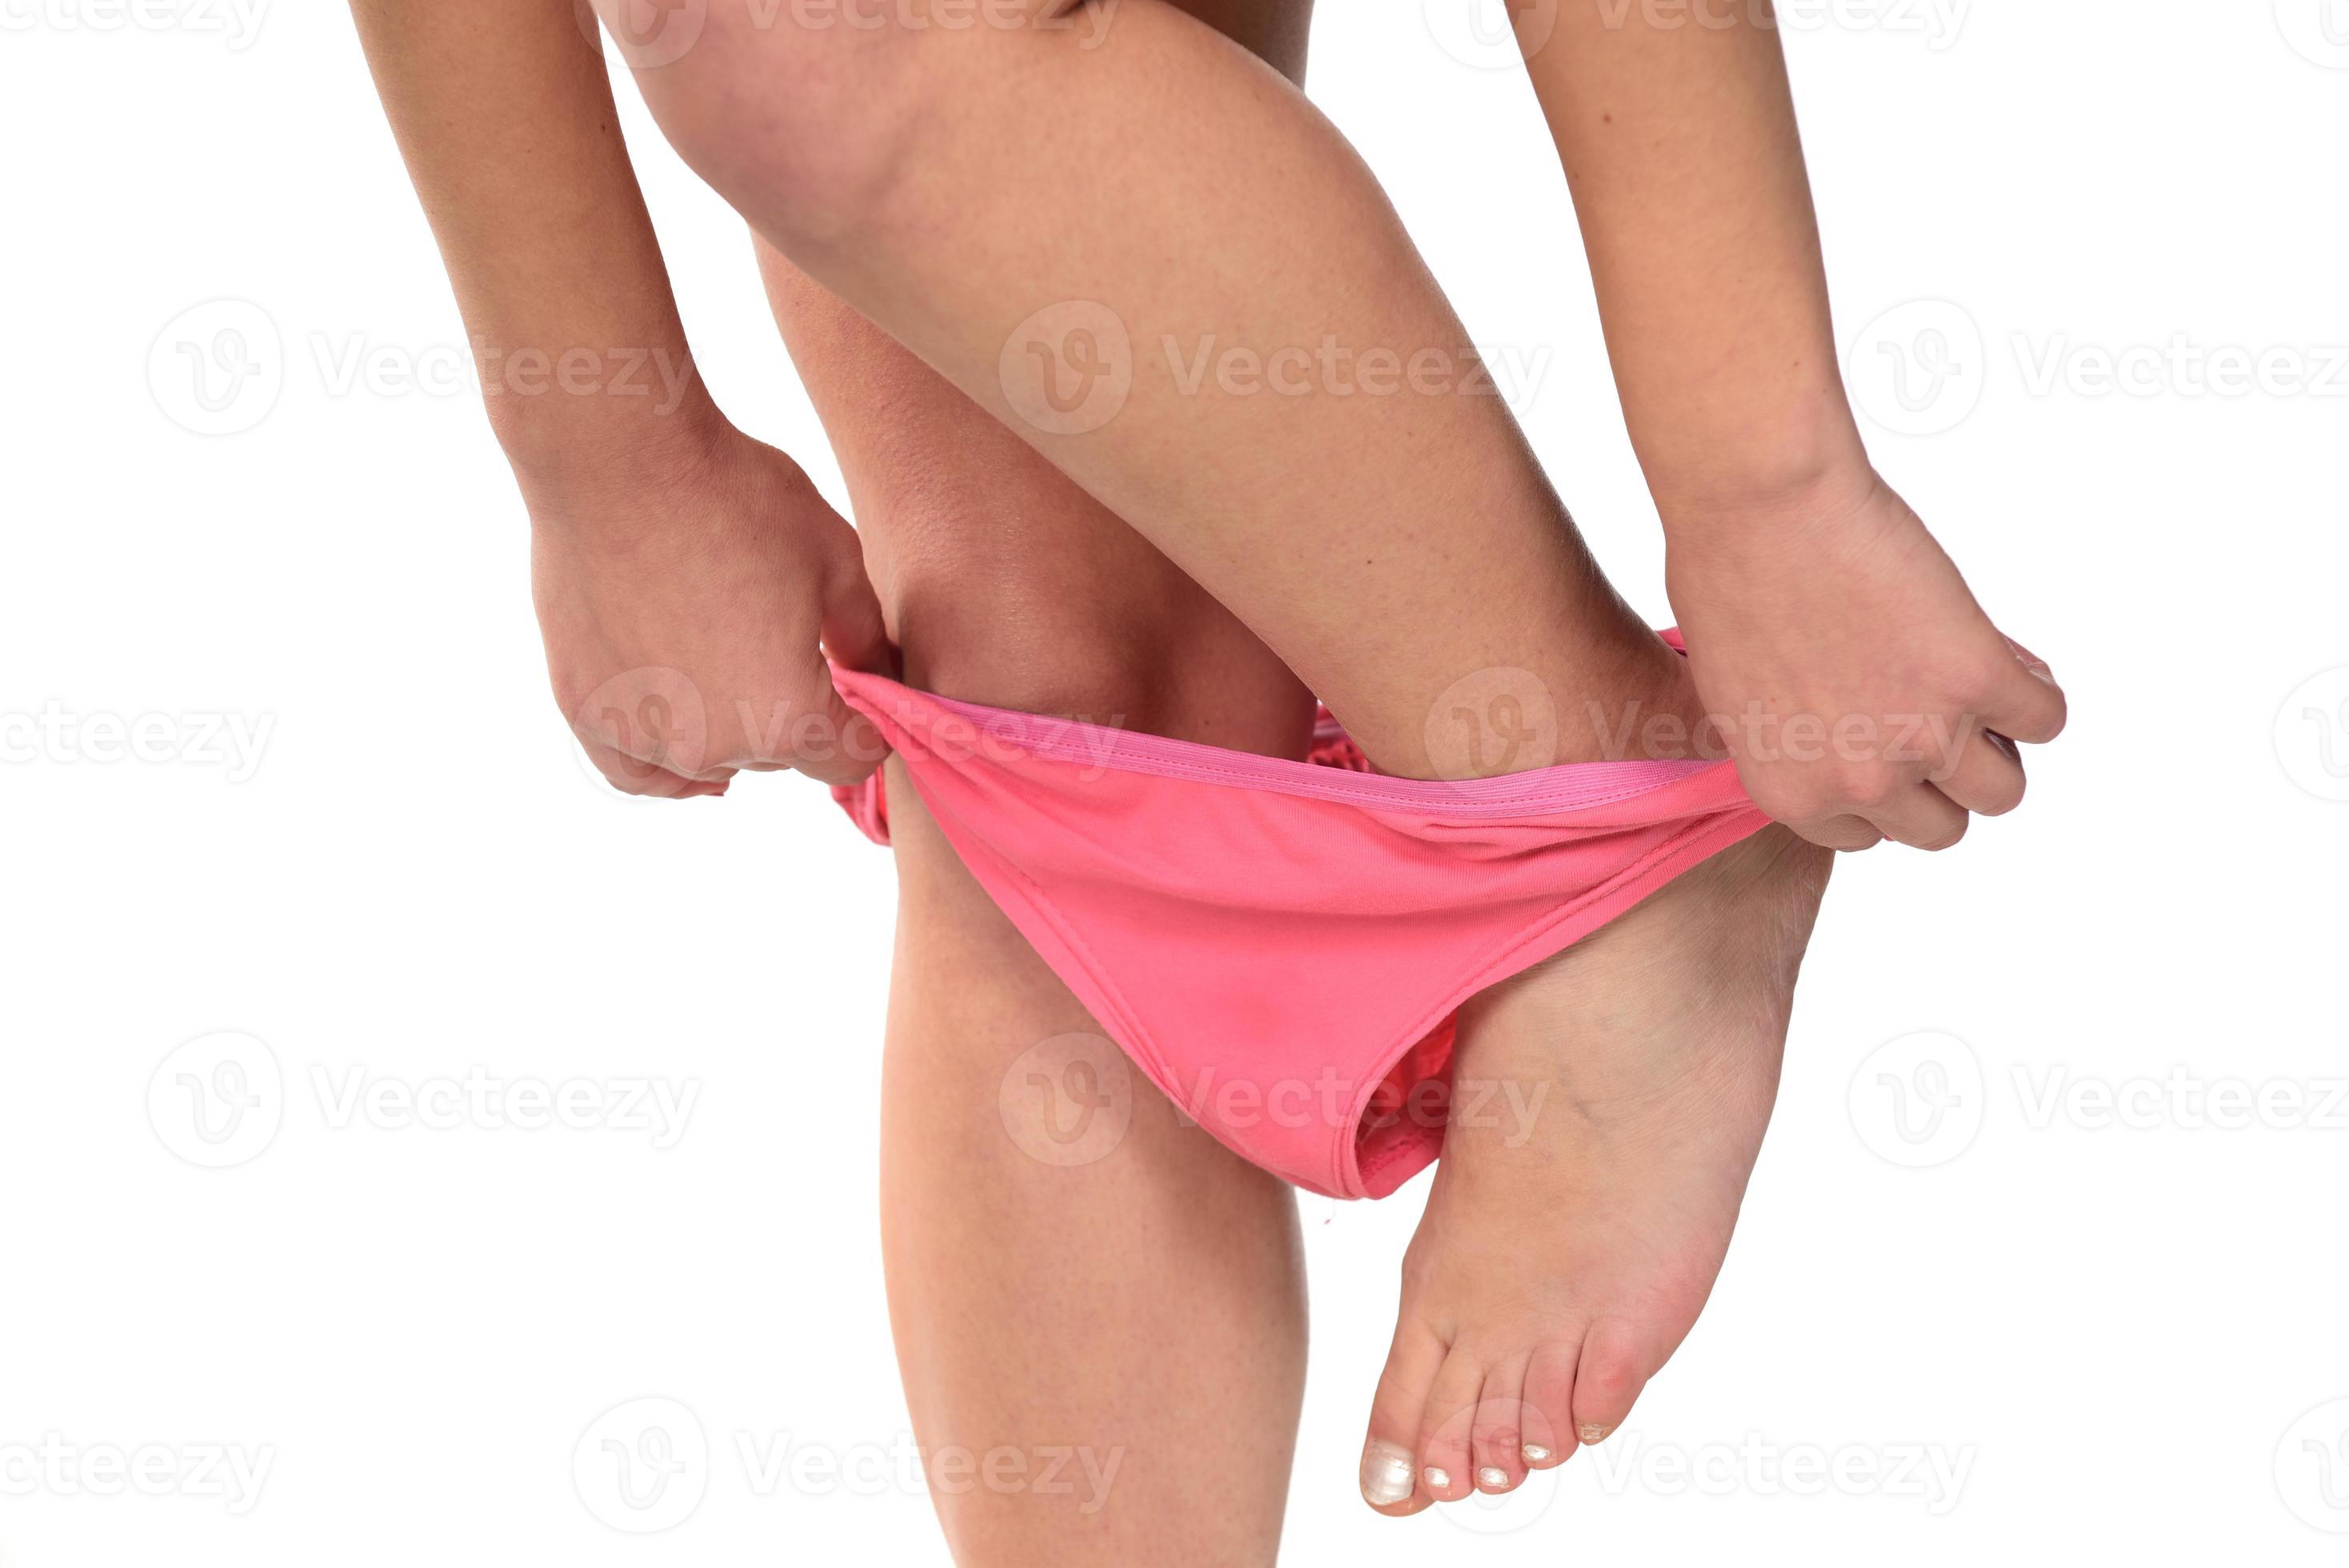 Best of Women taking panties off